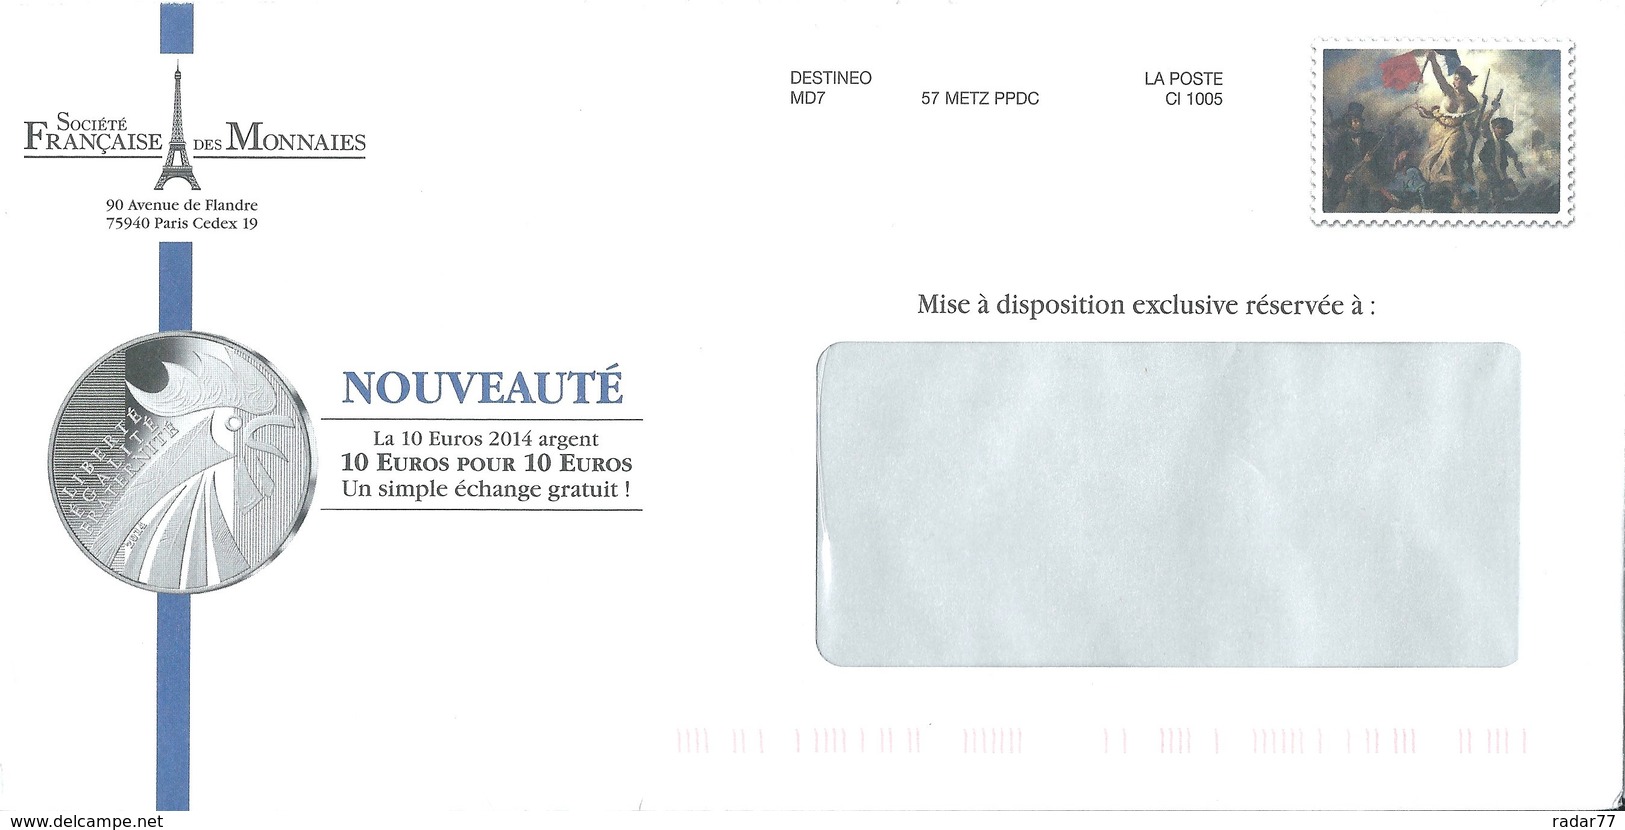 Destineo MD7 Avec Simili-timbre "Liberté Guidant Le Peuple" De Delacroix - Enteros Privados